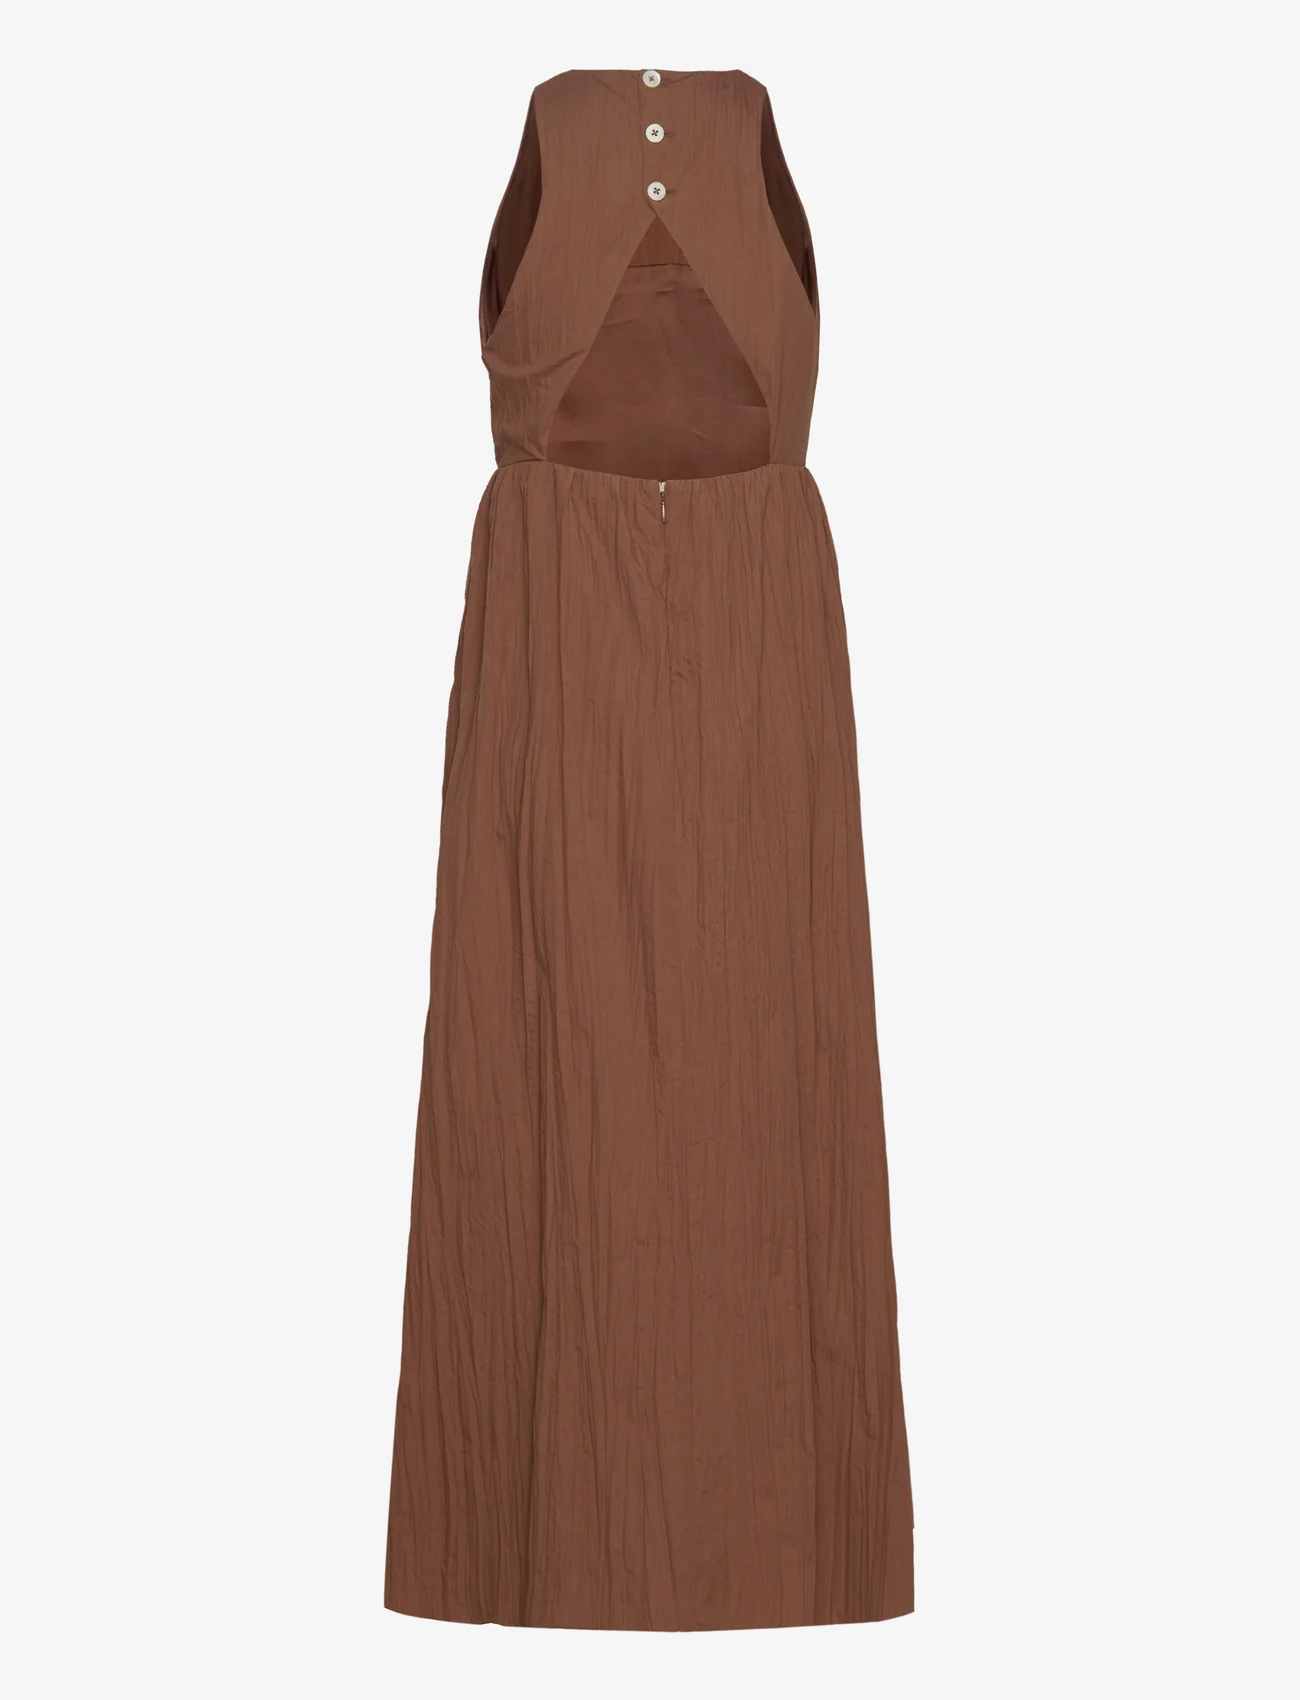 Hope - Cut-Out Dress - maxikleider - camel beige crinkled - 1